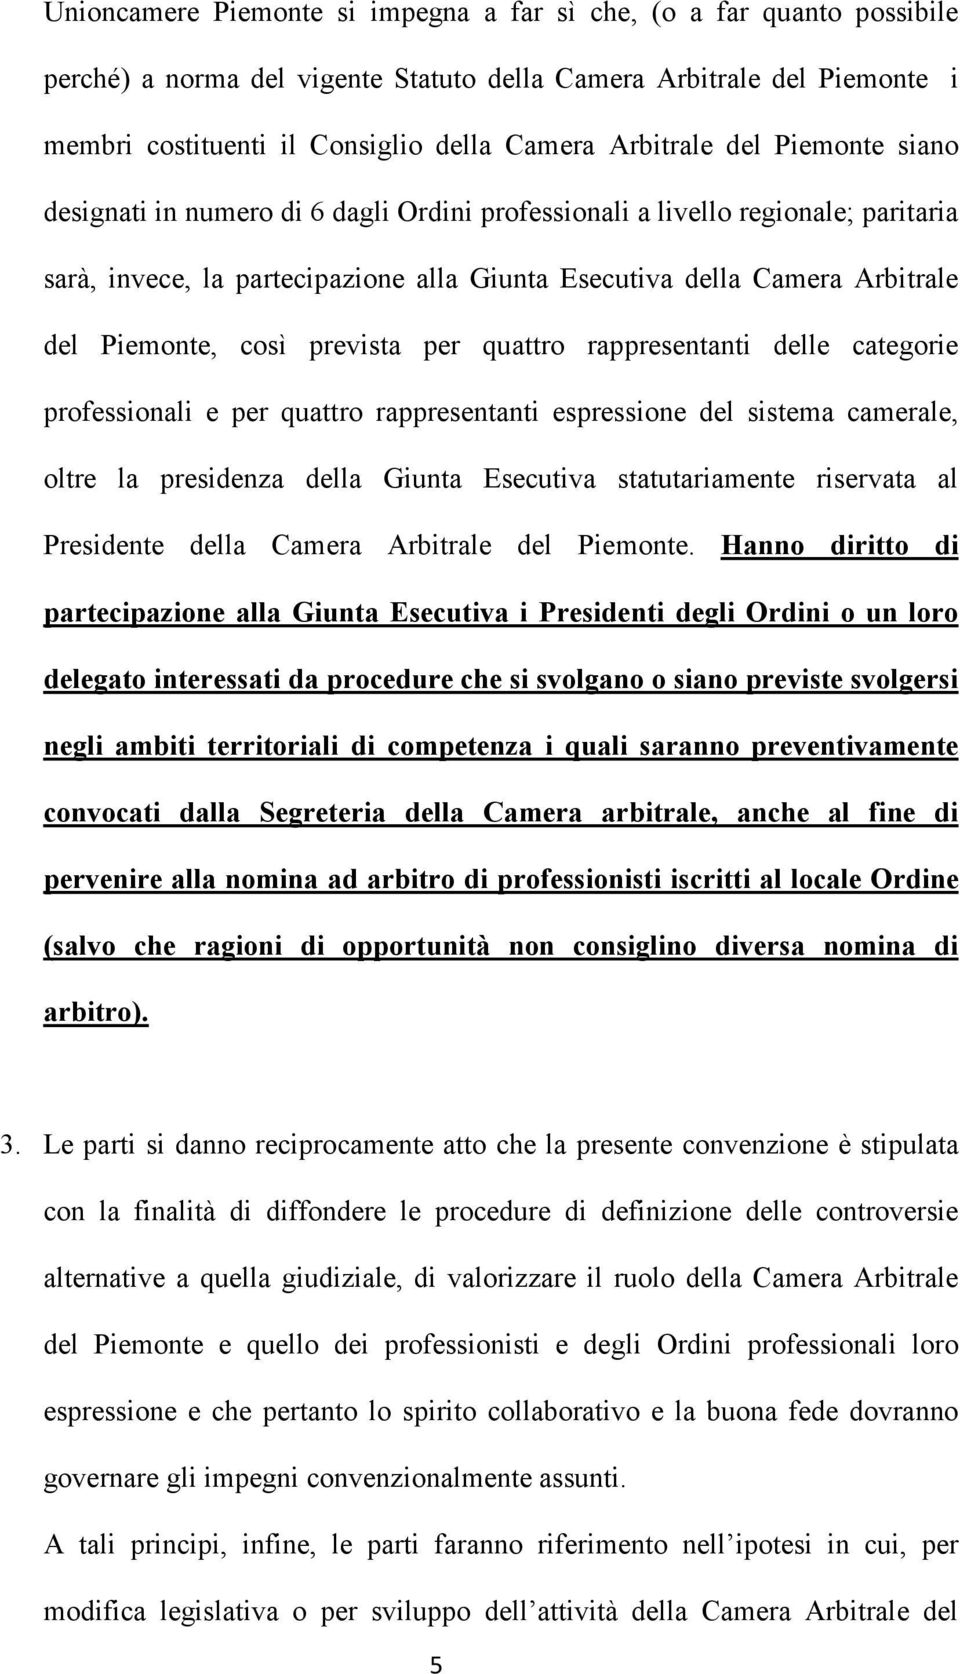 Piemonte, così prevista per quattro rappresentanti delle categorie professionali e per quattro rappresentanti espressione del sistema camerale, oltre la presidenza della Giunta Esecutiva